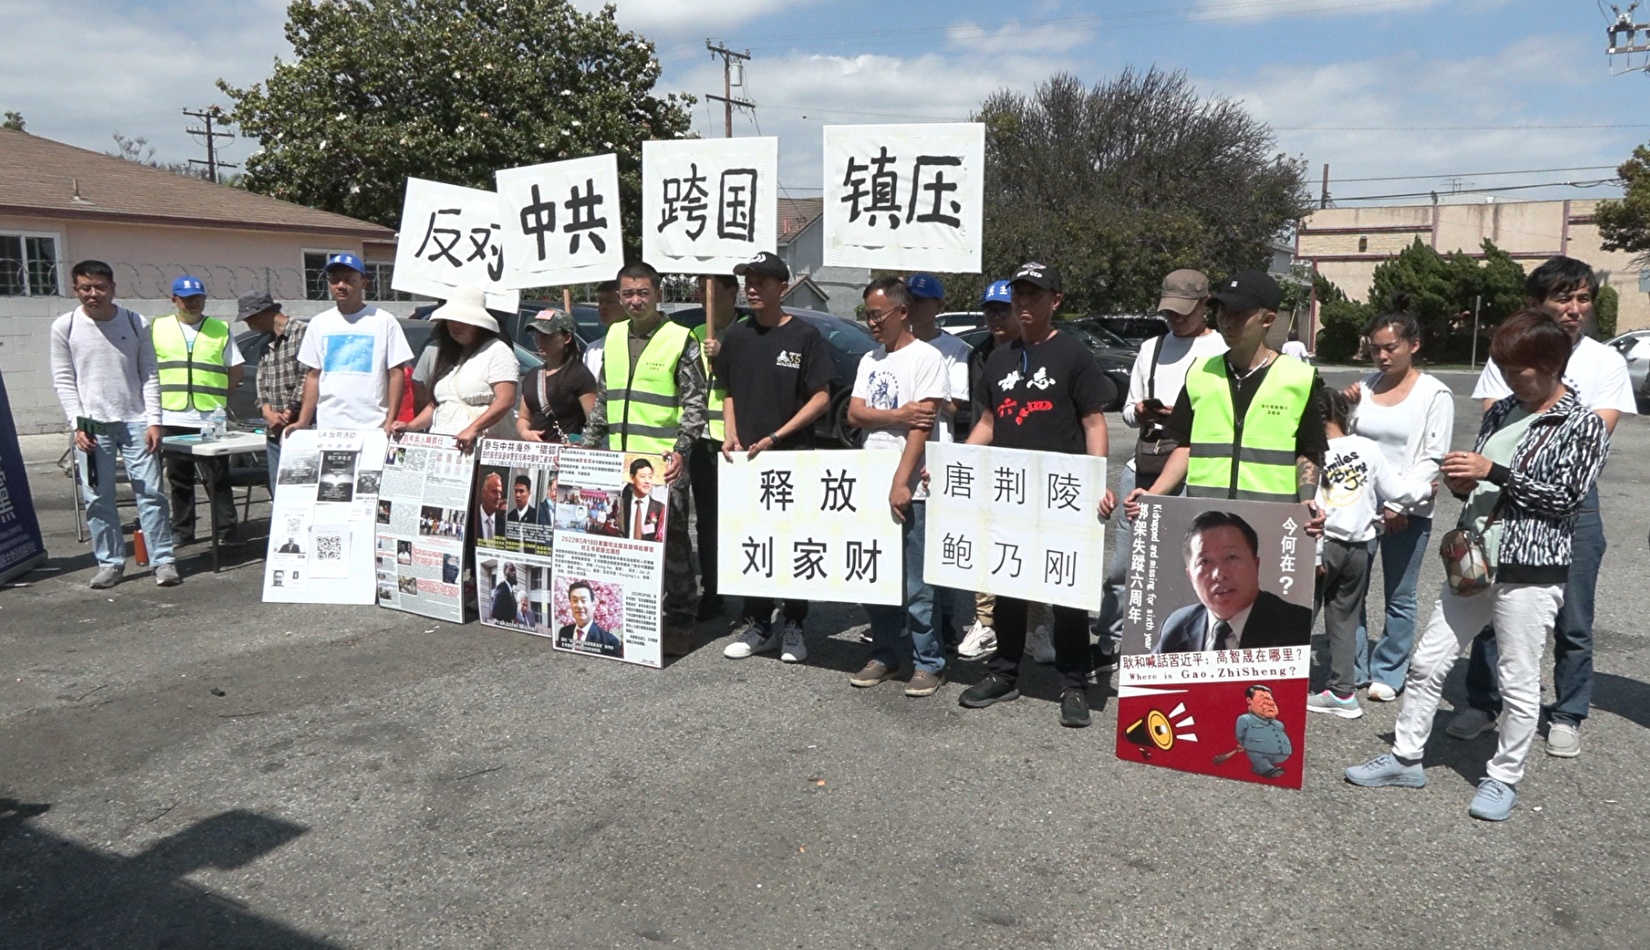 洛城华人抗议中共跨国镇压 教公众识别应对之法